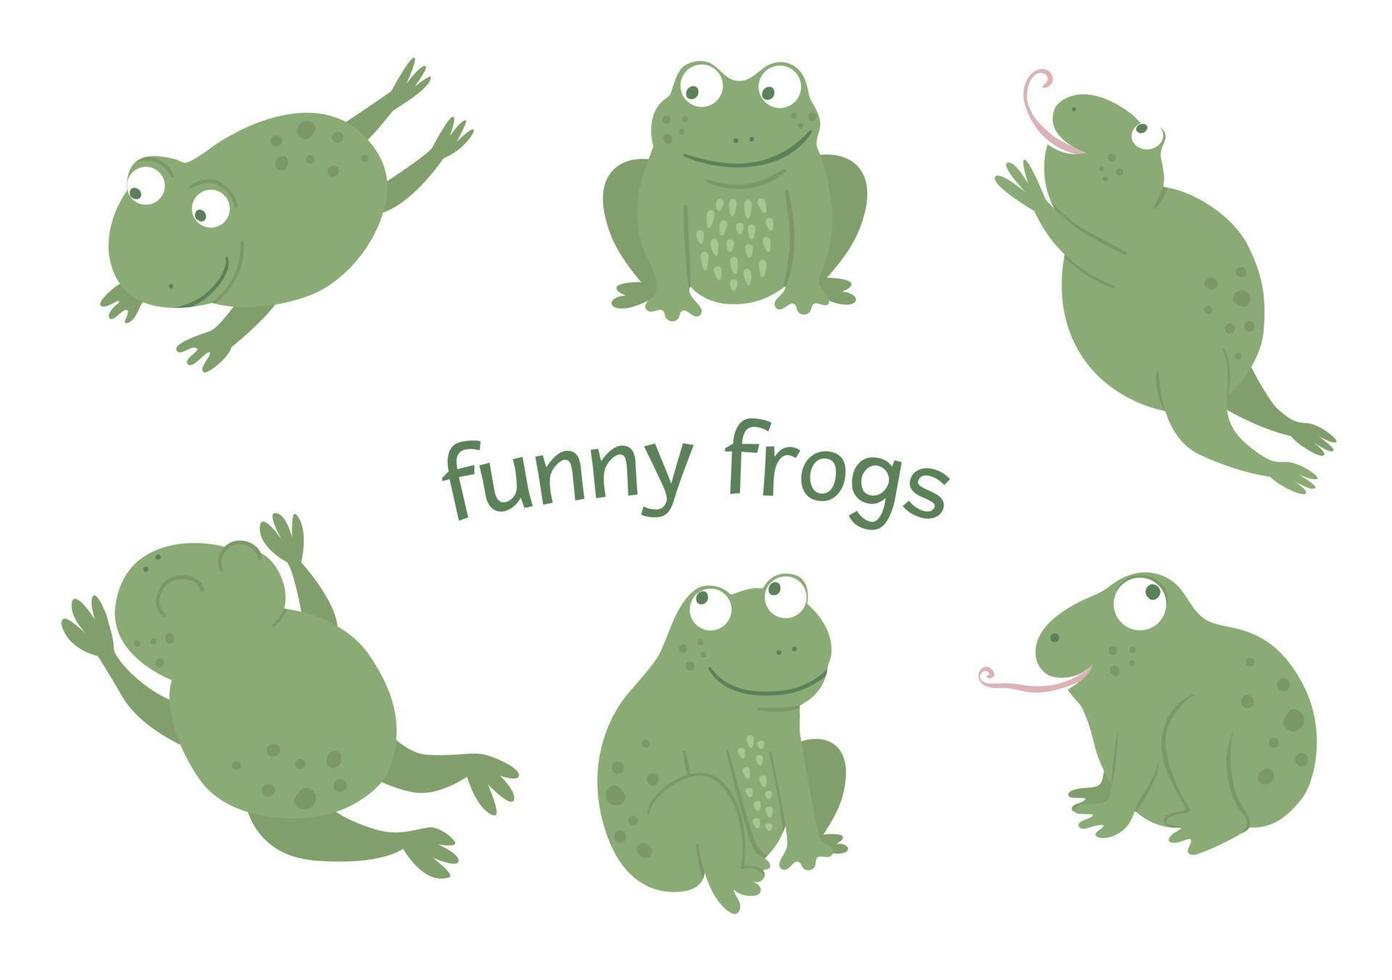 conjunto de vectores de ranas divertidas planas de estilo de dibujos animados en diferentes poses. linda ilustración de animales de pantano del bosque. colección de anfibios